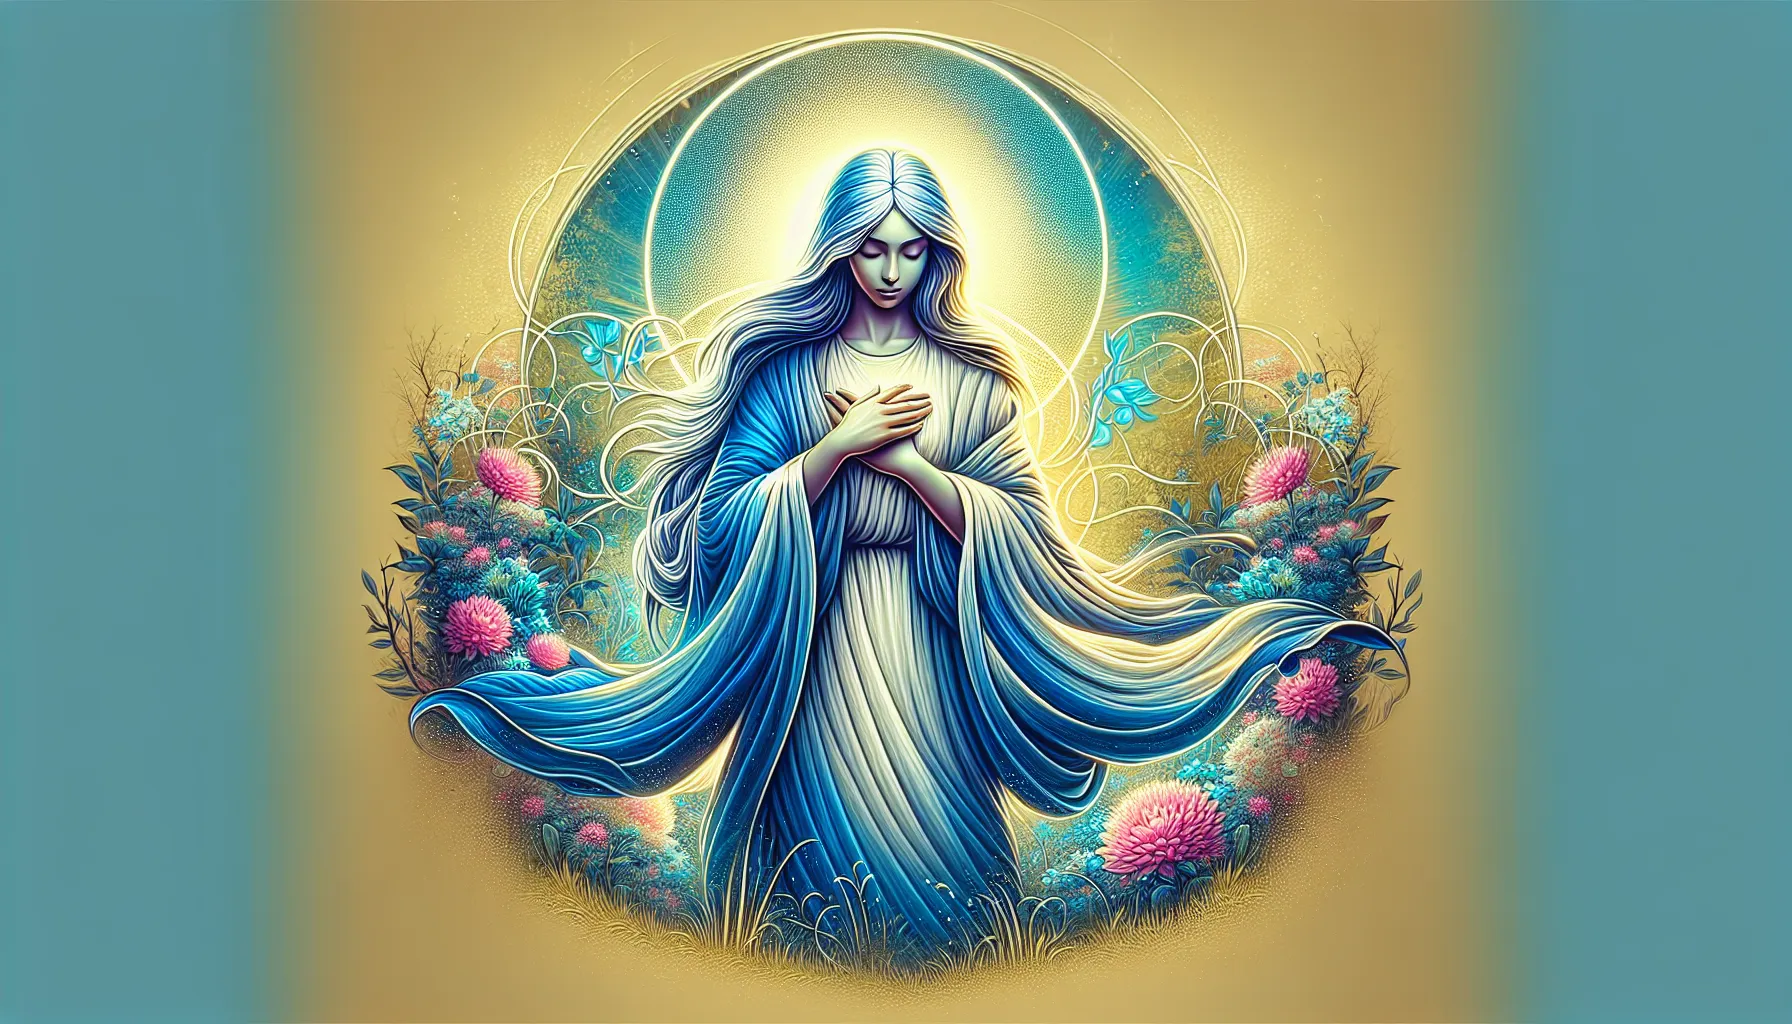 Nossa Senhora é uma figura religiosa venerada por muitos fiéis em todo o mundo. No entanto, não é possível traduzir o termo 